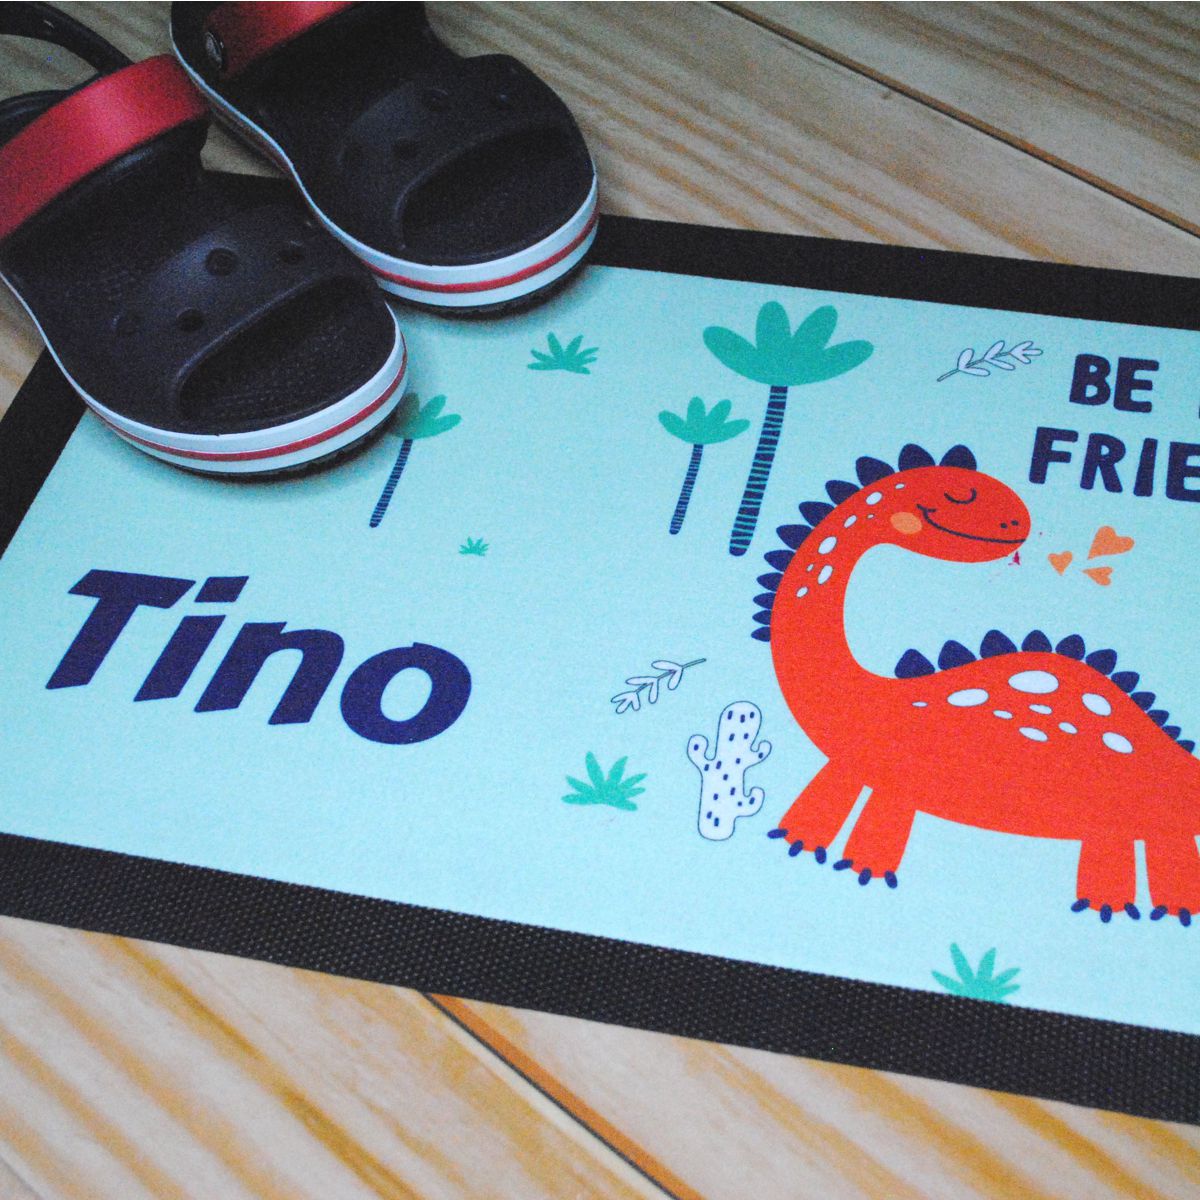 Beispiel Fußmatte Dino-Motiv mit Namen und Schuhe auf Fußboden